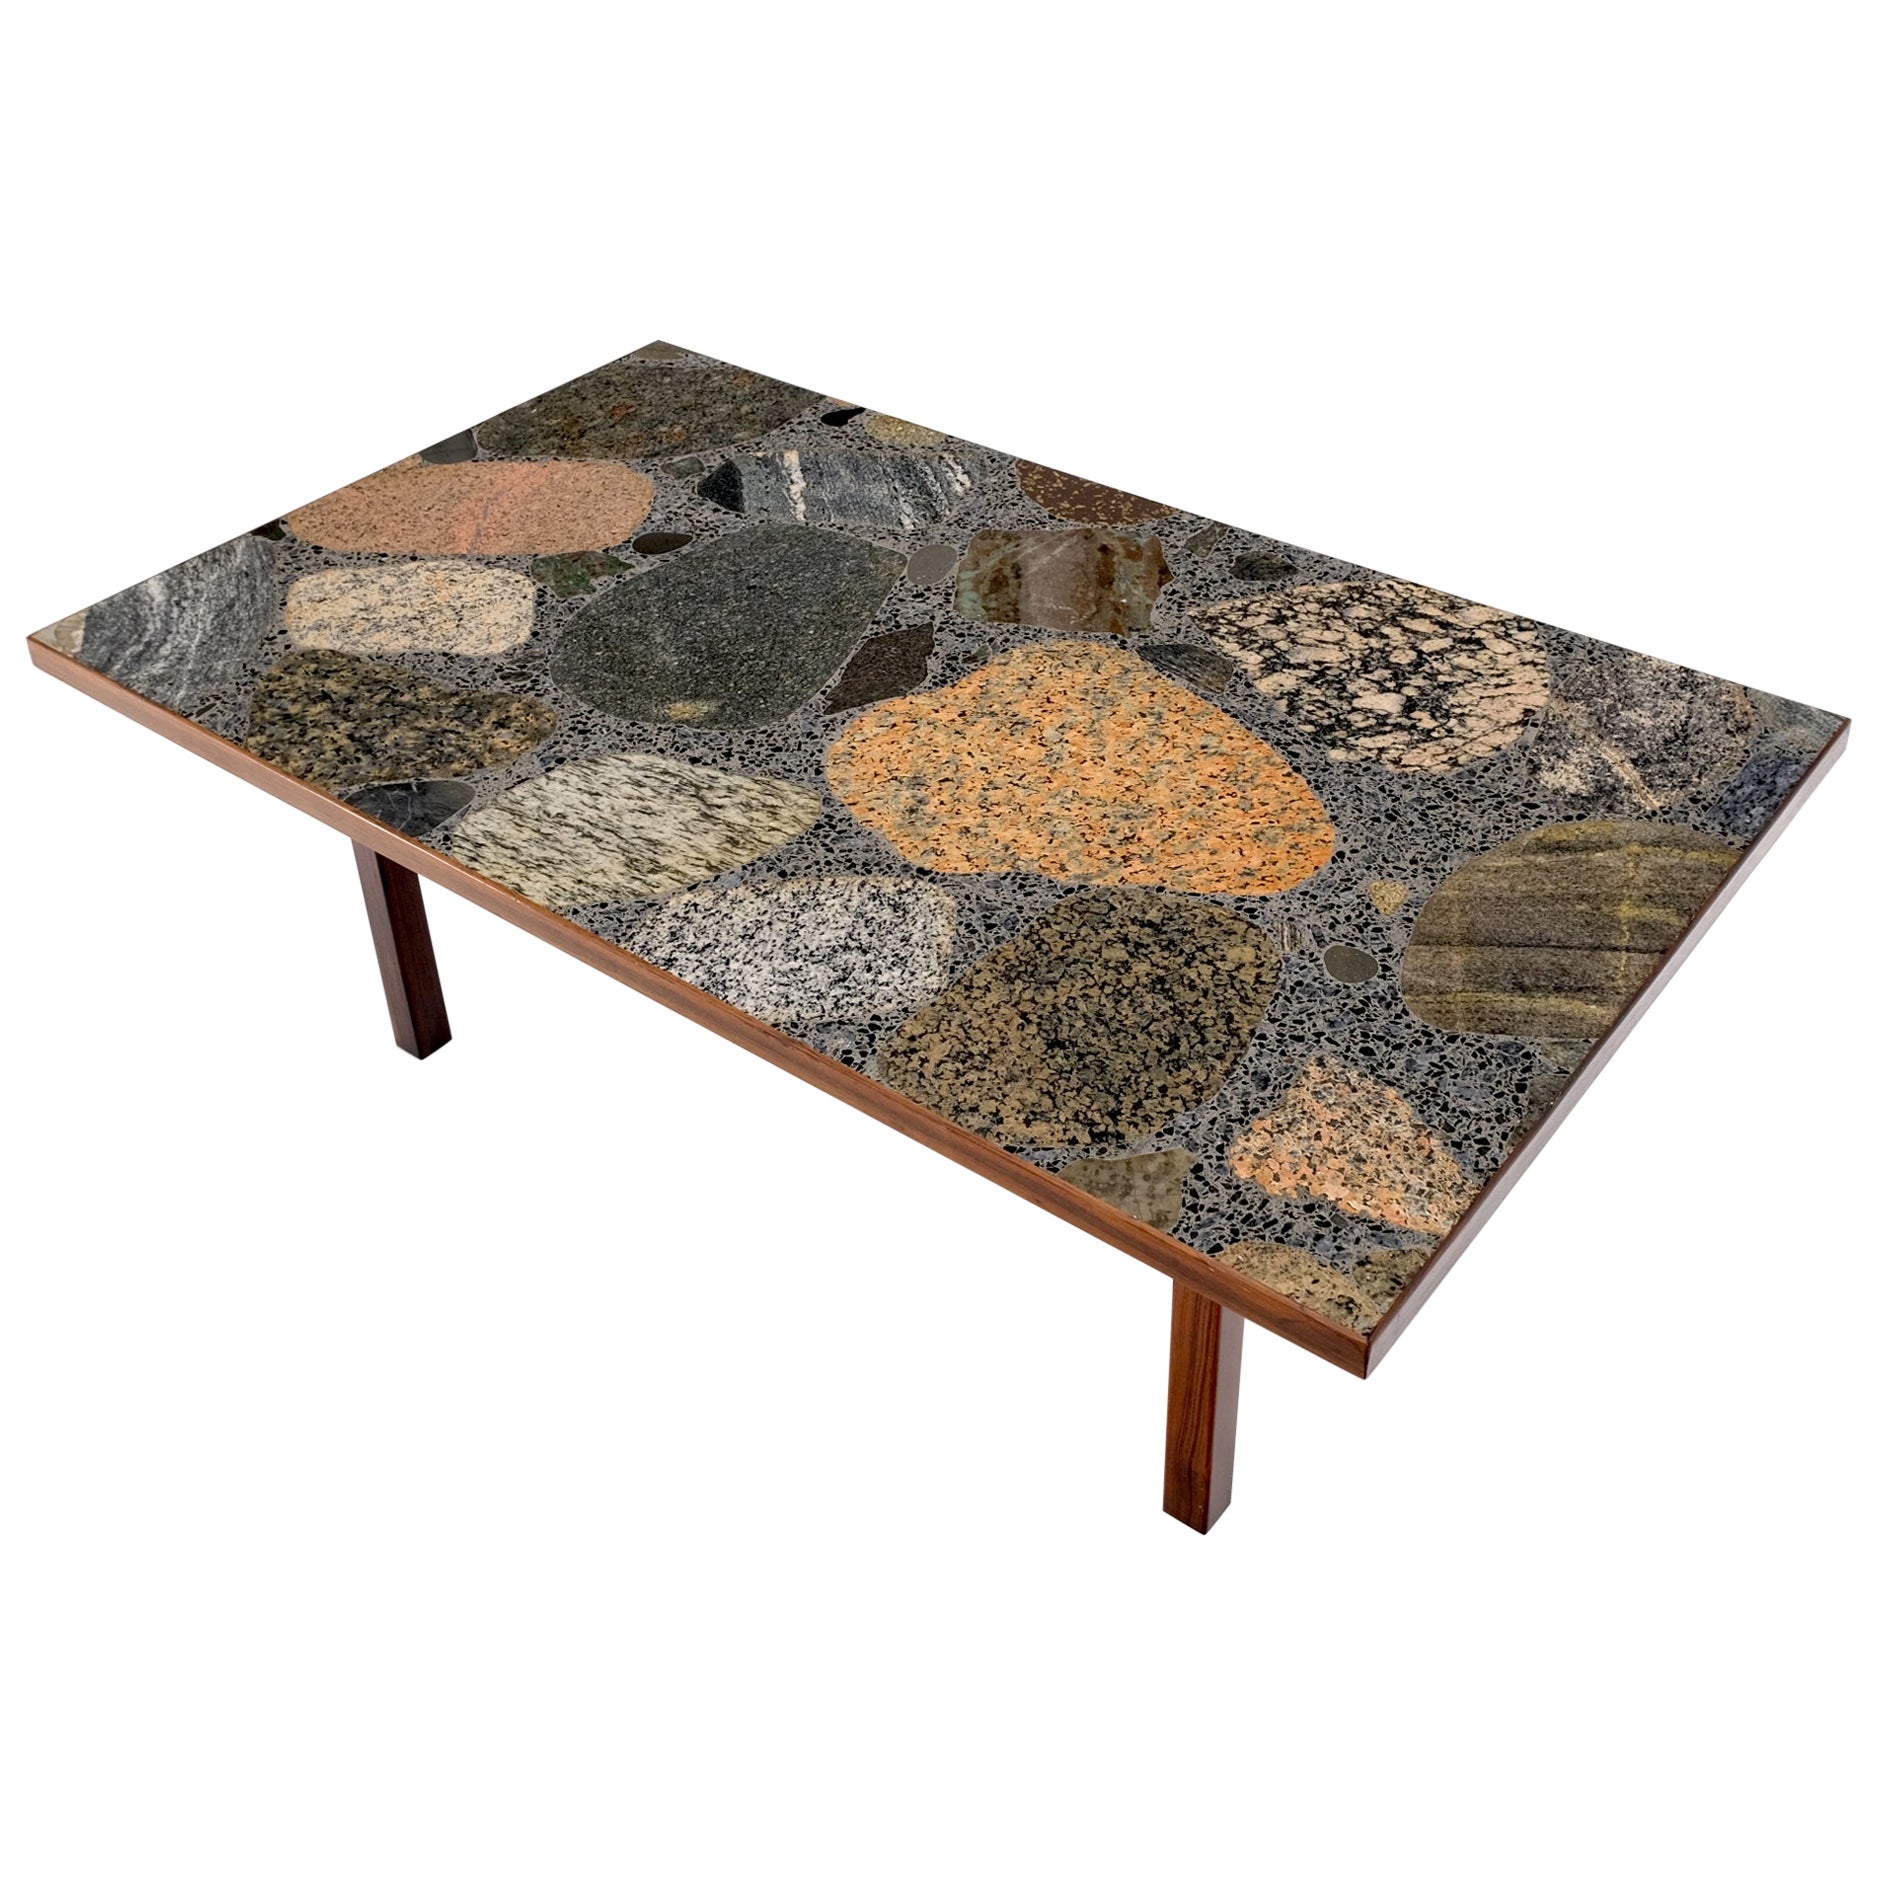 Table basse moderne danoise rectangulaire en bois de rose massif avec base en terrazzo et plateau en granit